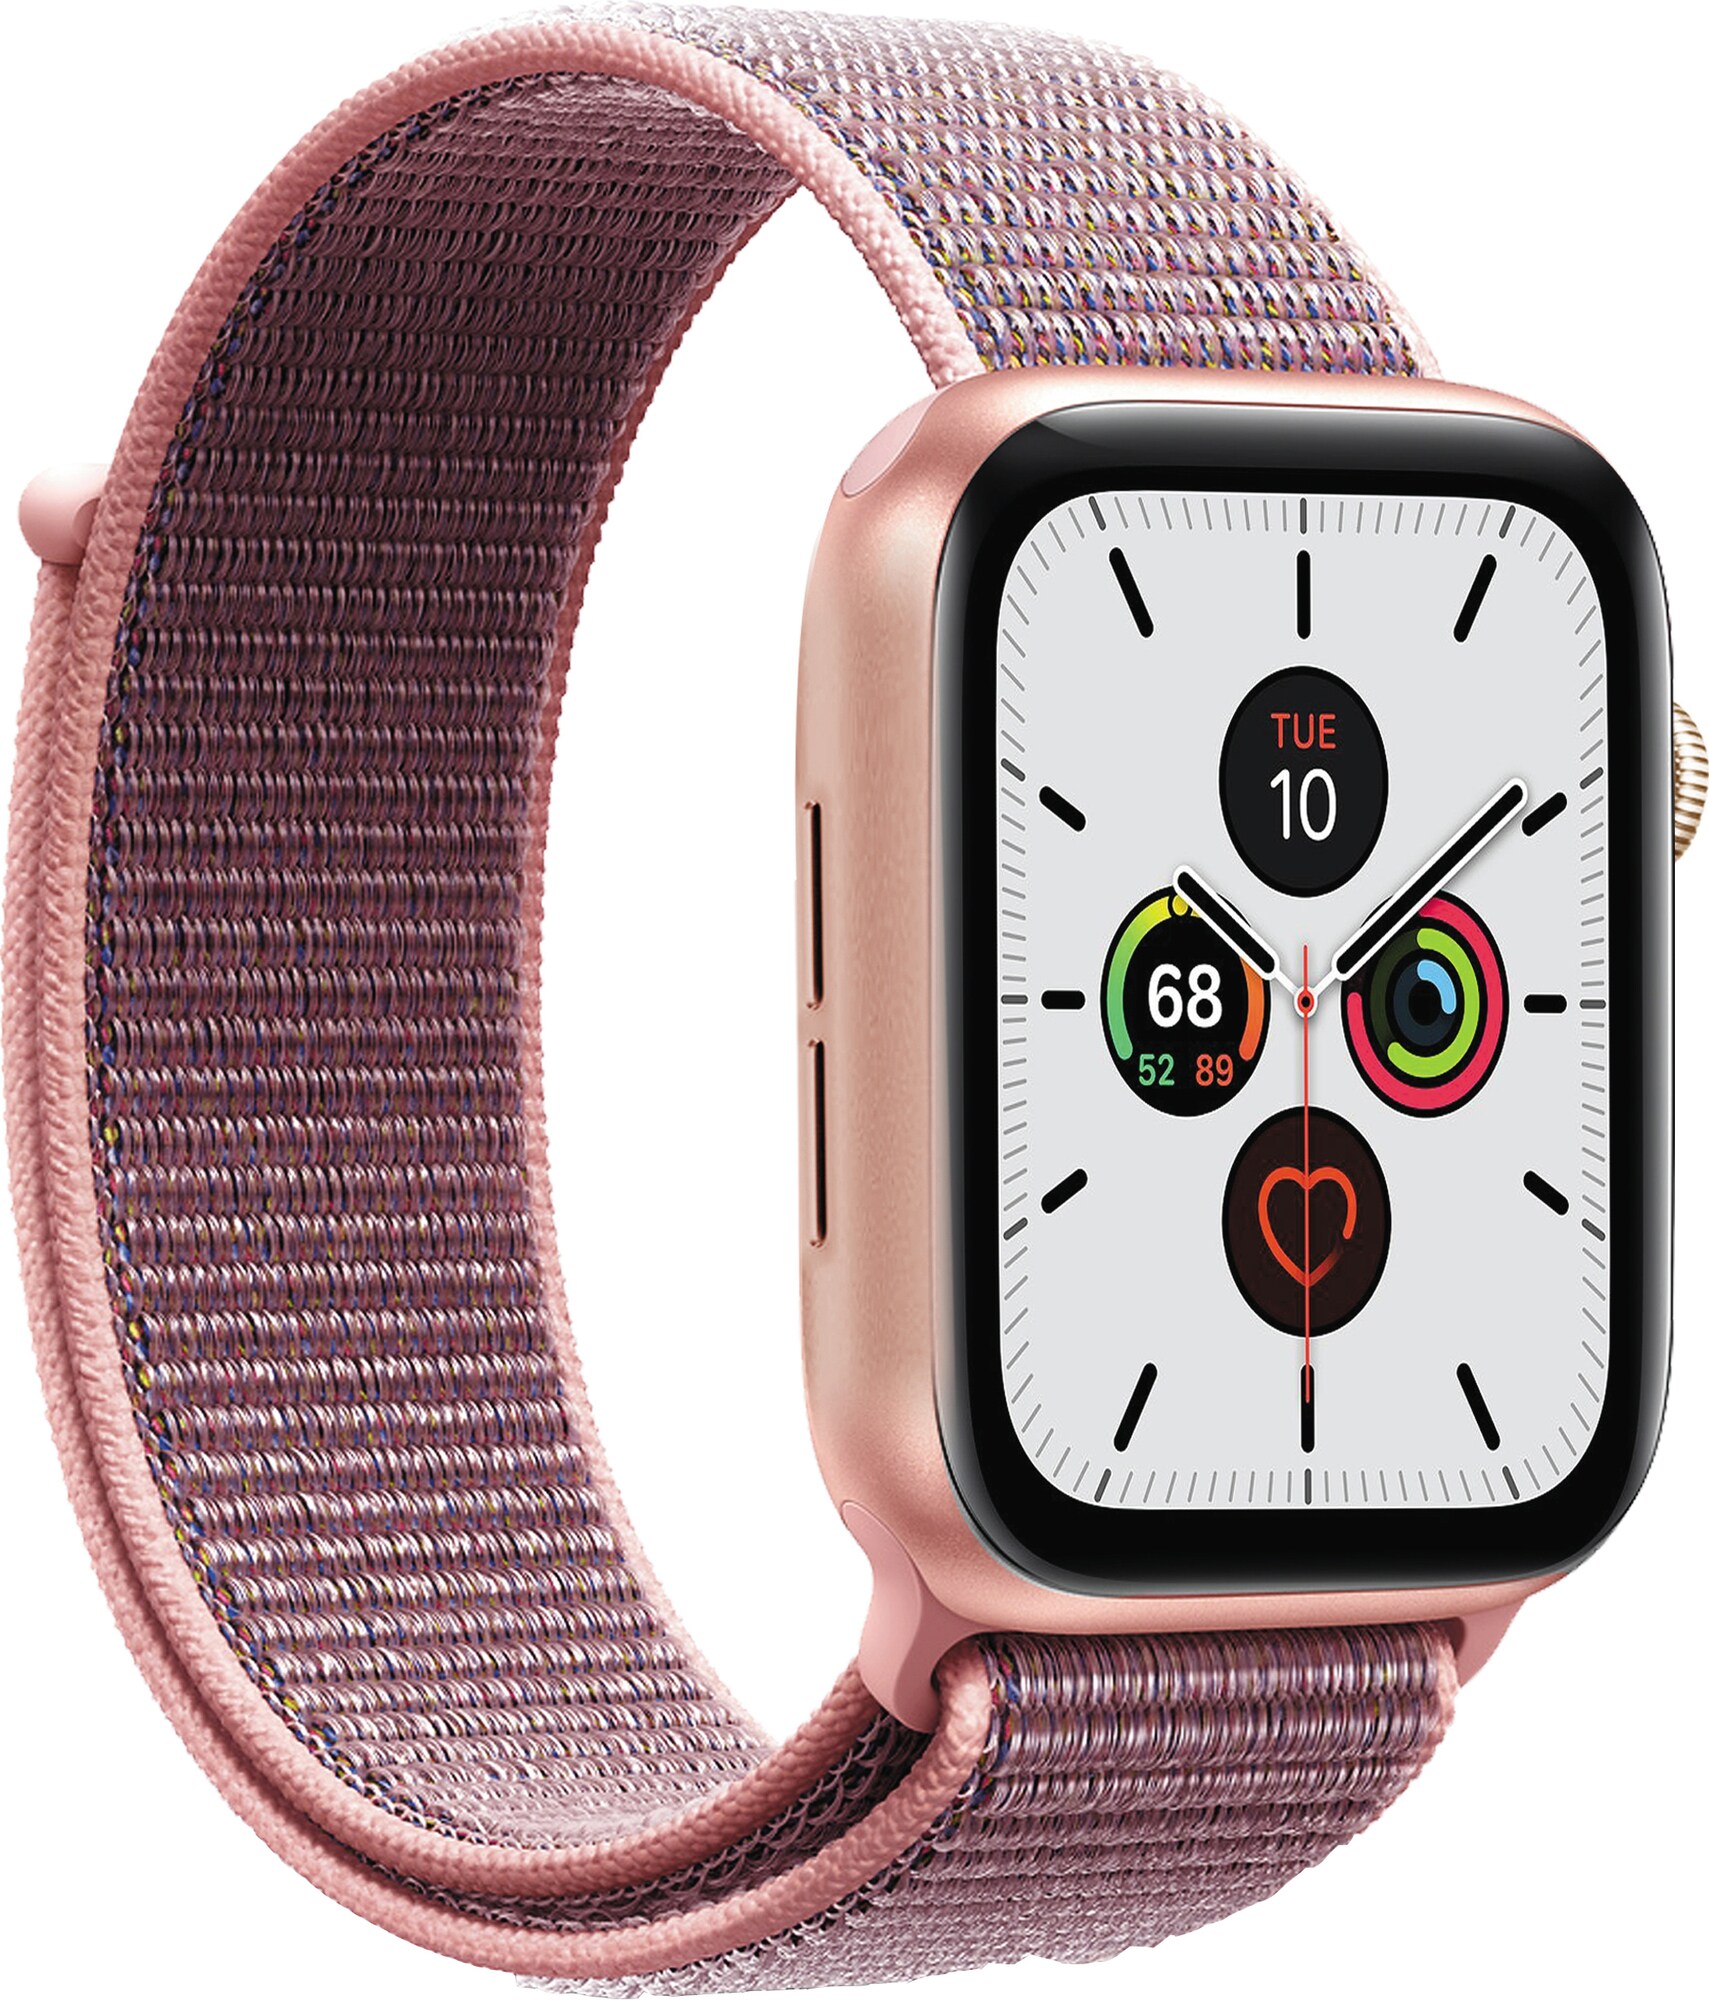 Kjøp tilbehør og Apple klokkereim til Apple Watch - Elkjøp